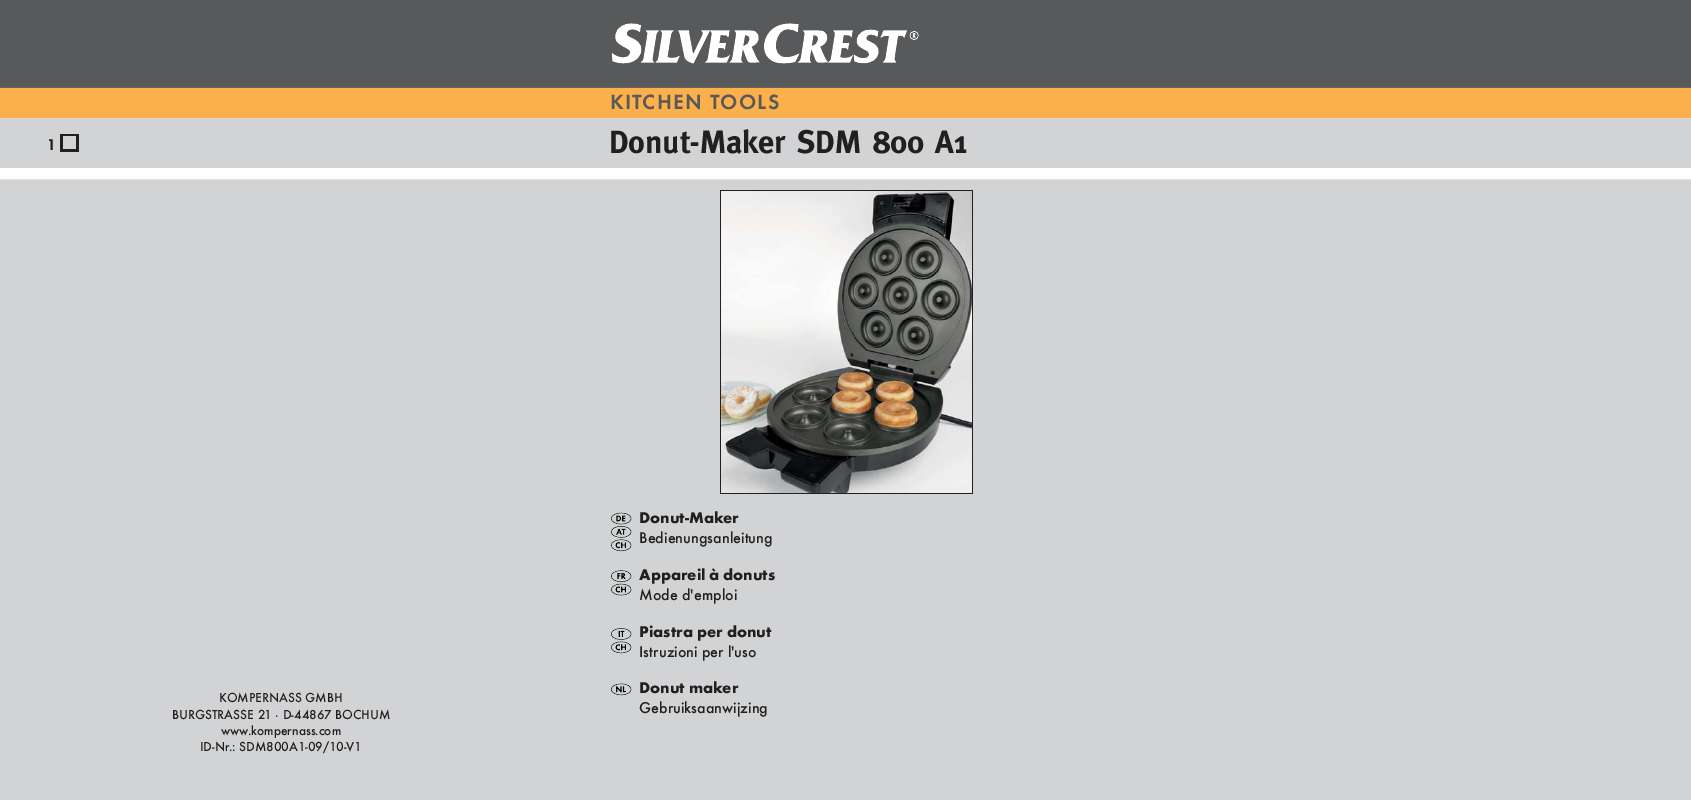 Guide utilisation  SILVERCREST SDM 800 A1 DOUGHNUT MAKER  de la marque SILVERCREST